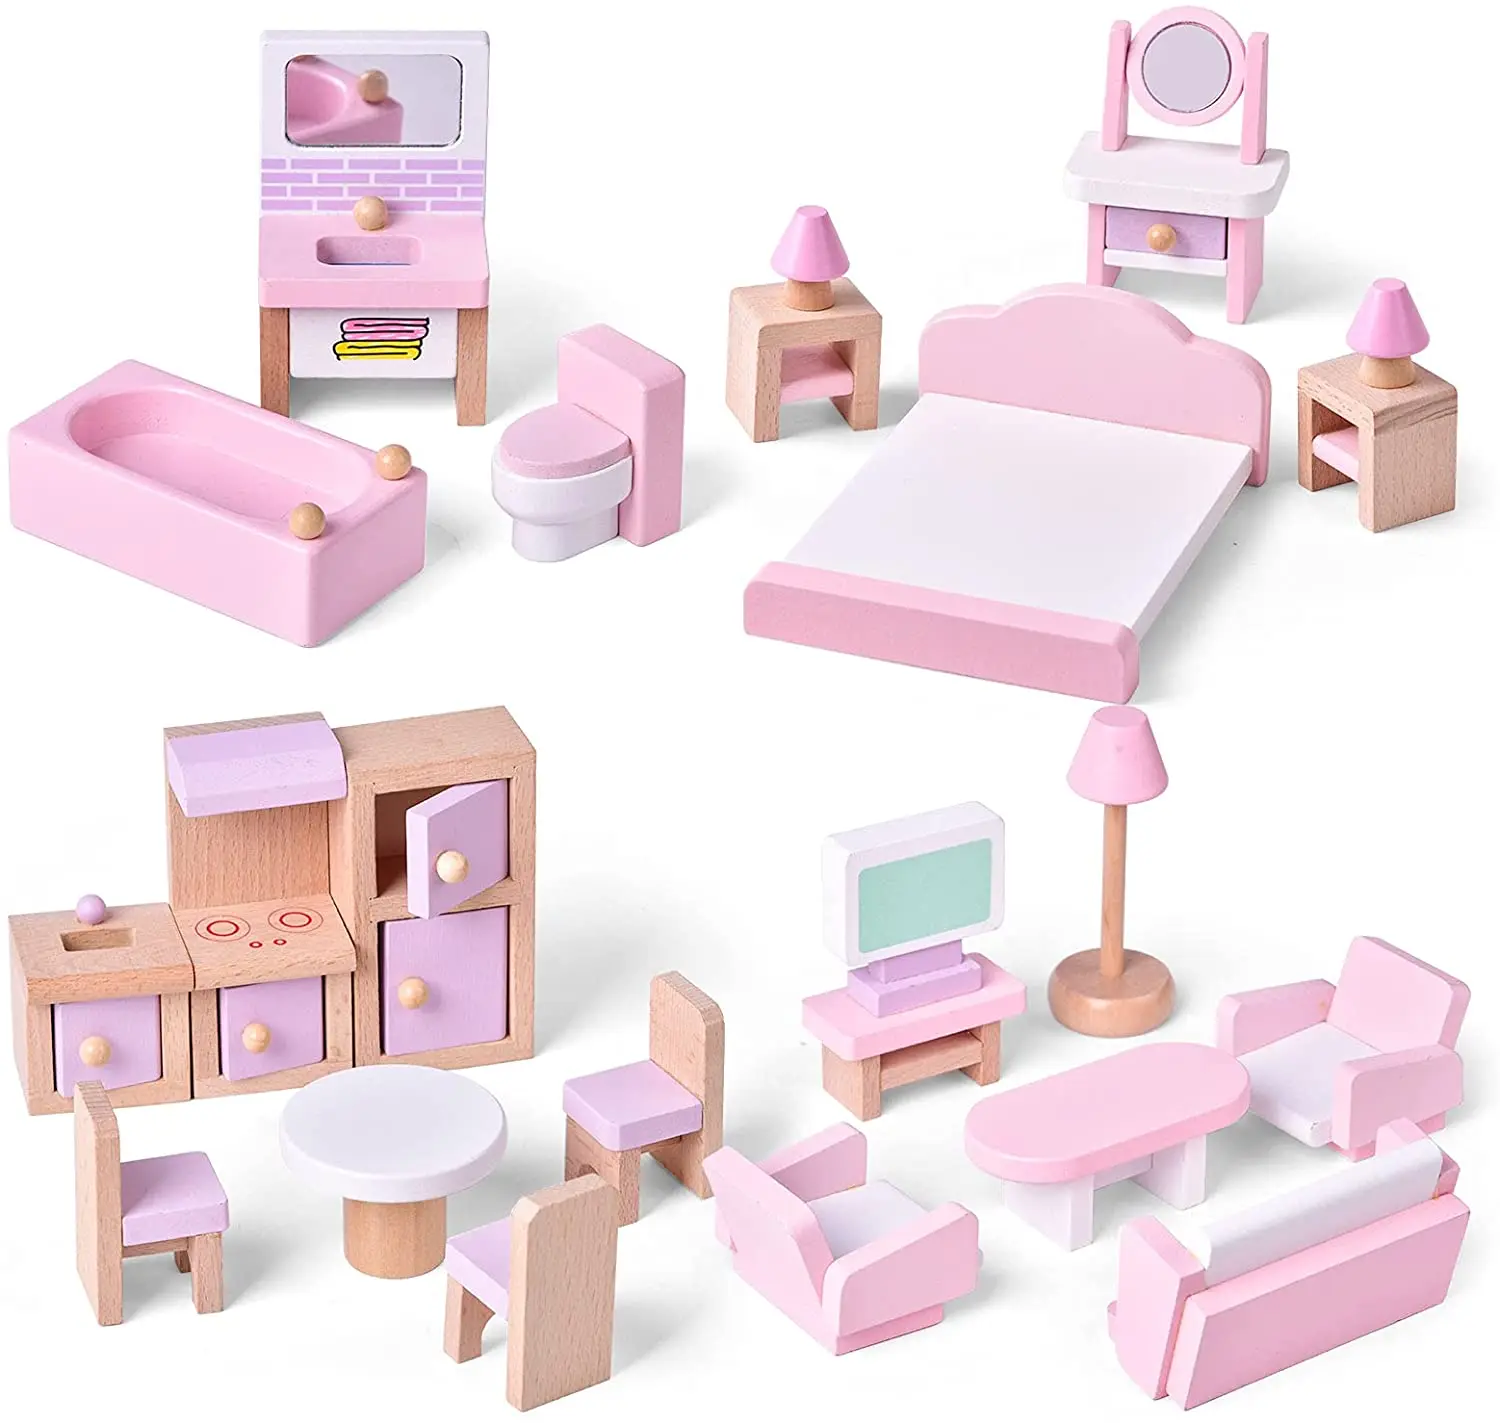 игрушечная мебель для кукольных домиков